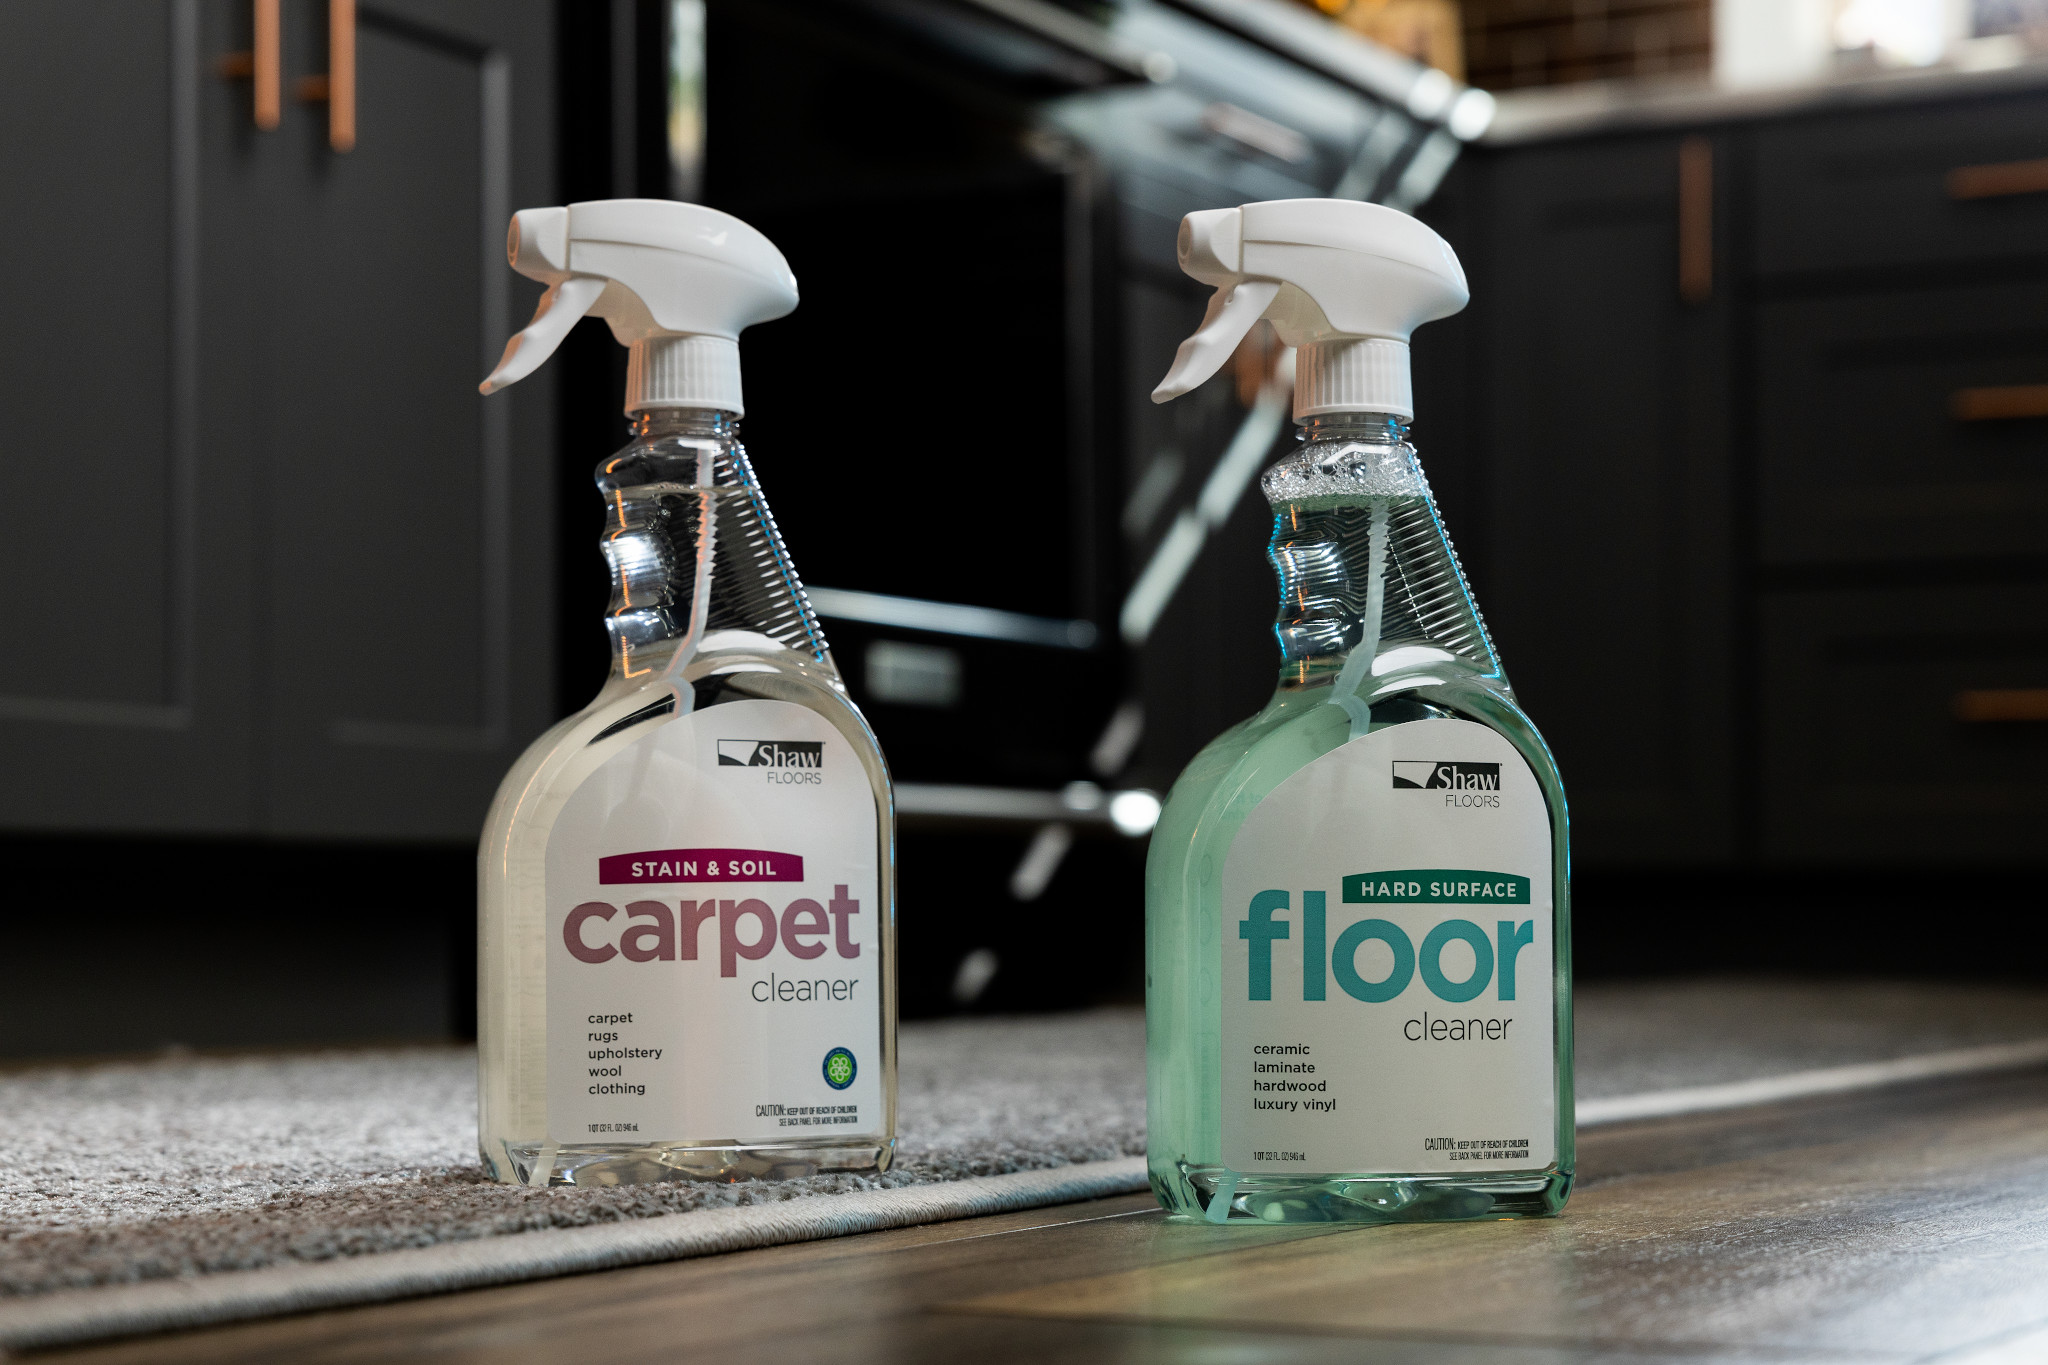 Image of Shaw Floors Carpet Cleaner spray bottle in kitchen.jpg